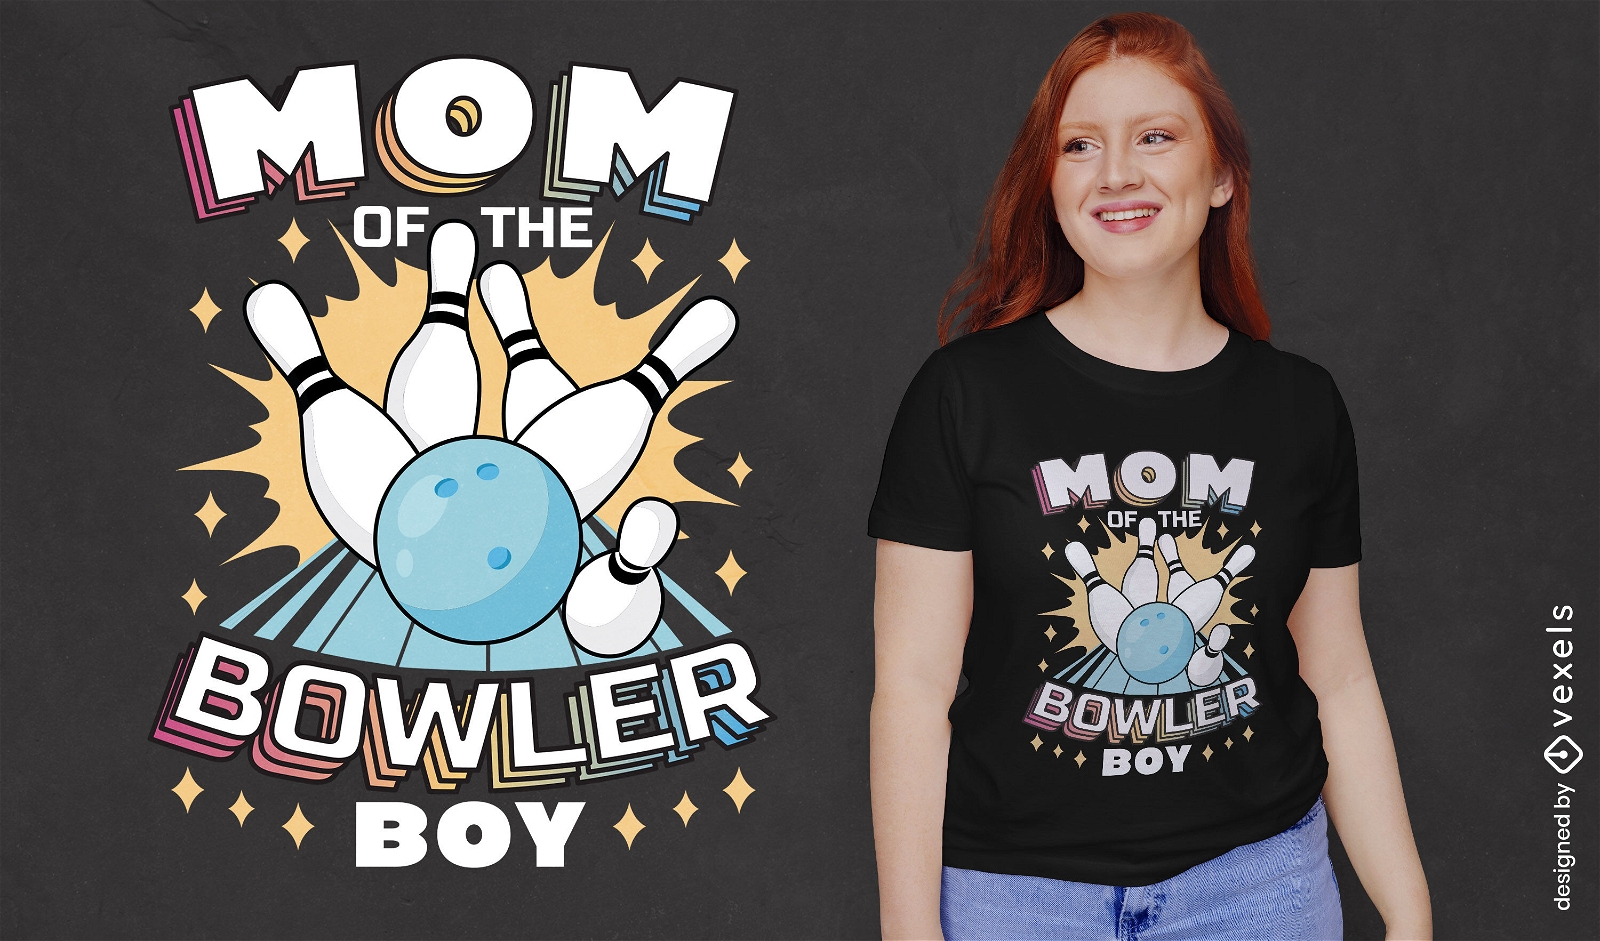 Bowler boy mom t-shirt design